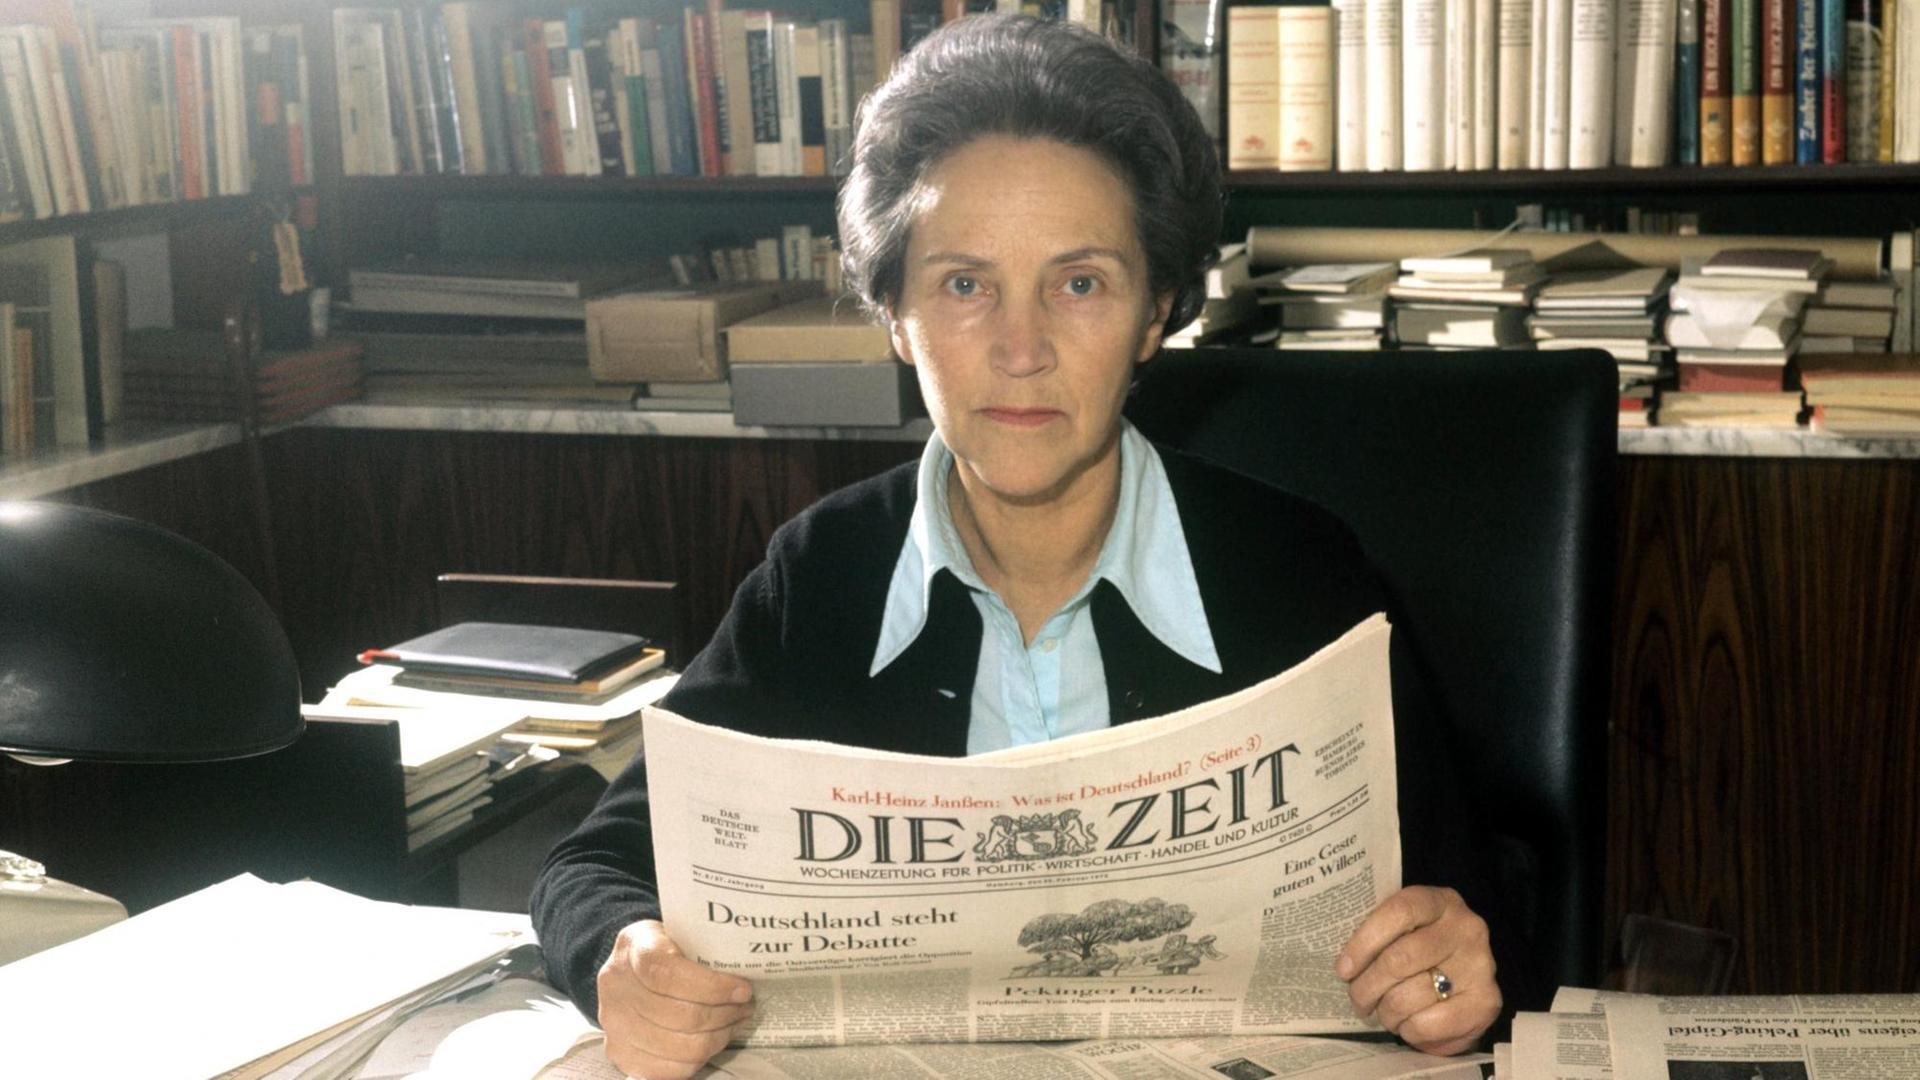 Die Journalistin und Buchautorin Marion Gräfin Dönhoff, Chefredakteurin der Wochenzeitung "Die Zeit" sitzt am 24.02.1972 in Hamburg an einem Schreibtisch und hat "Die Zeit" in der Hand.